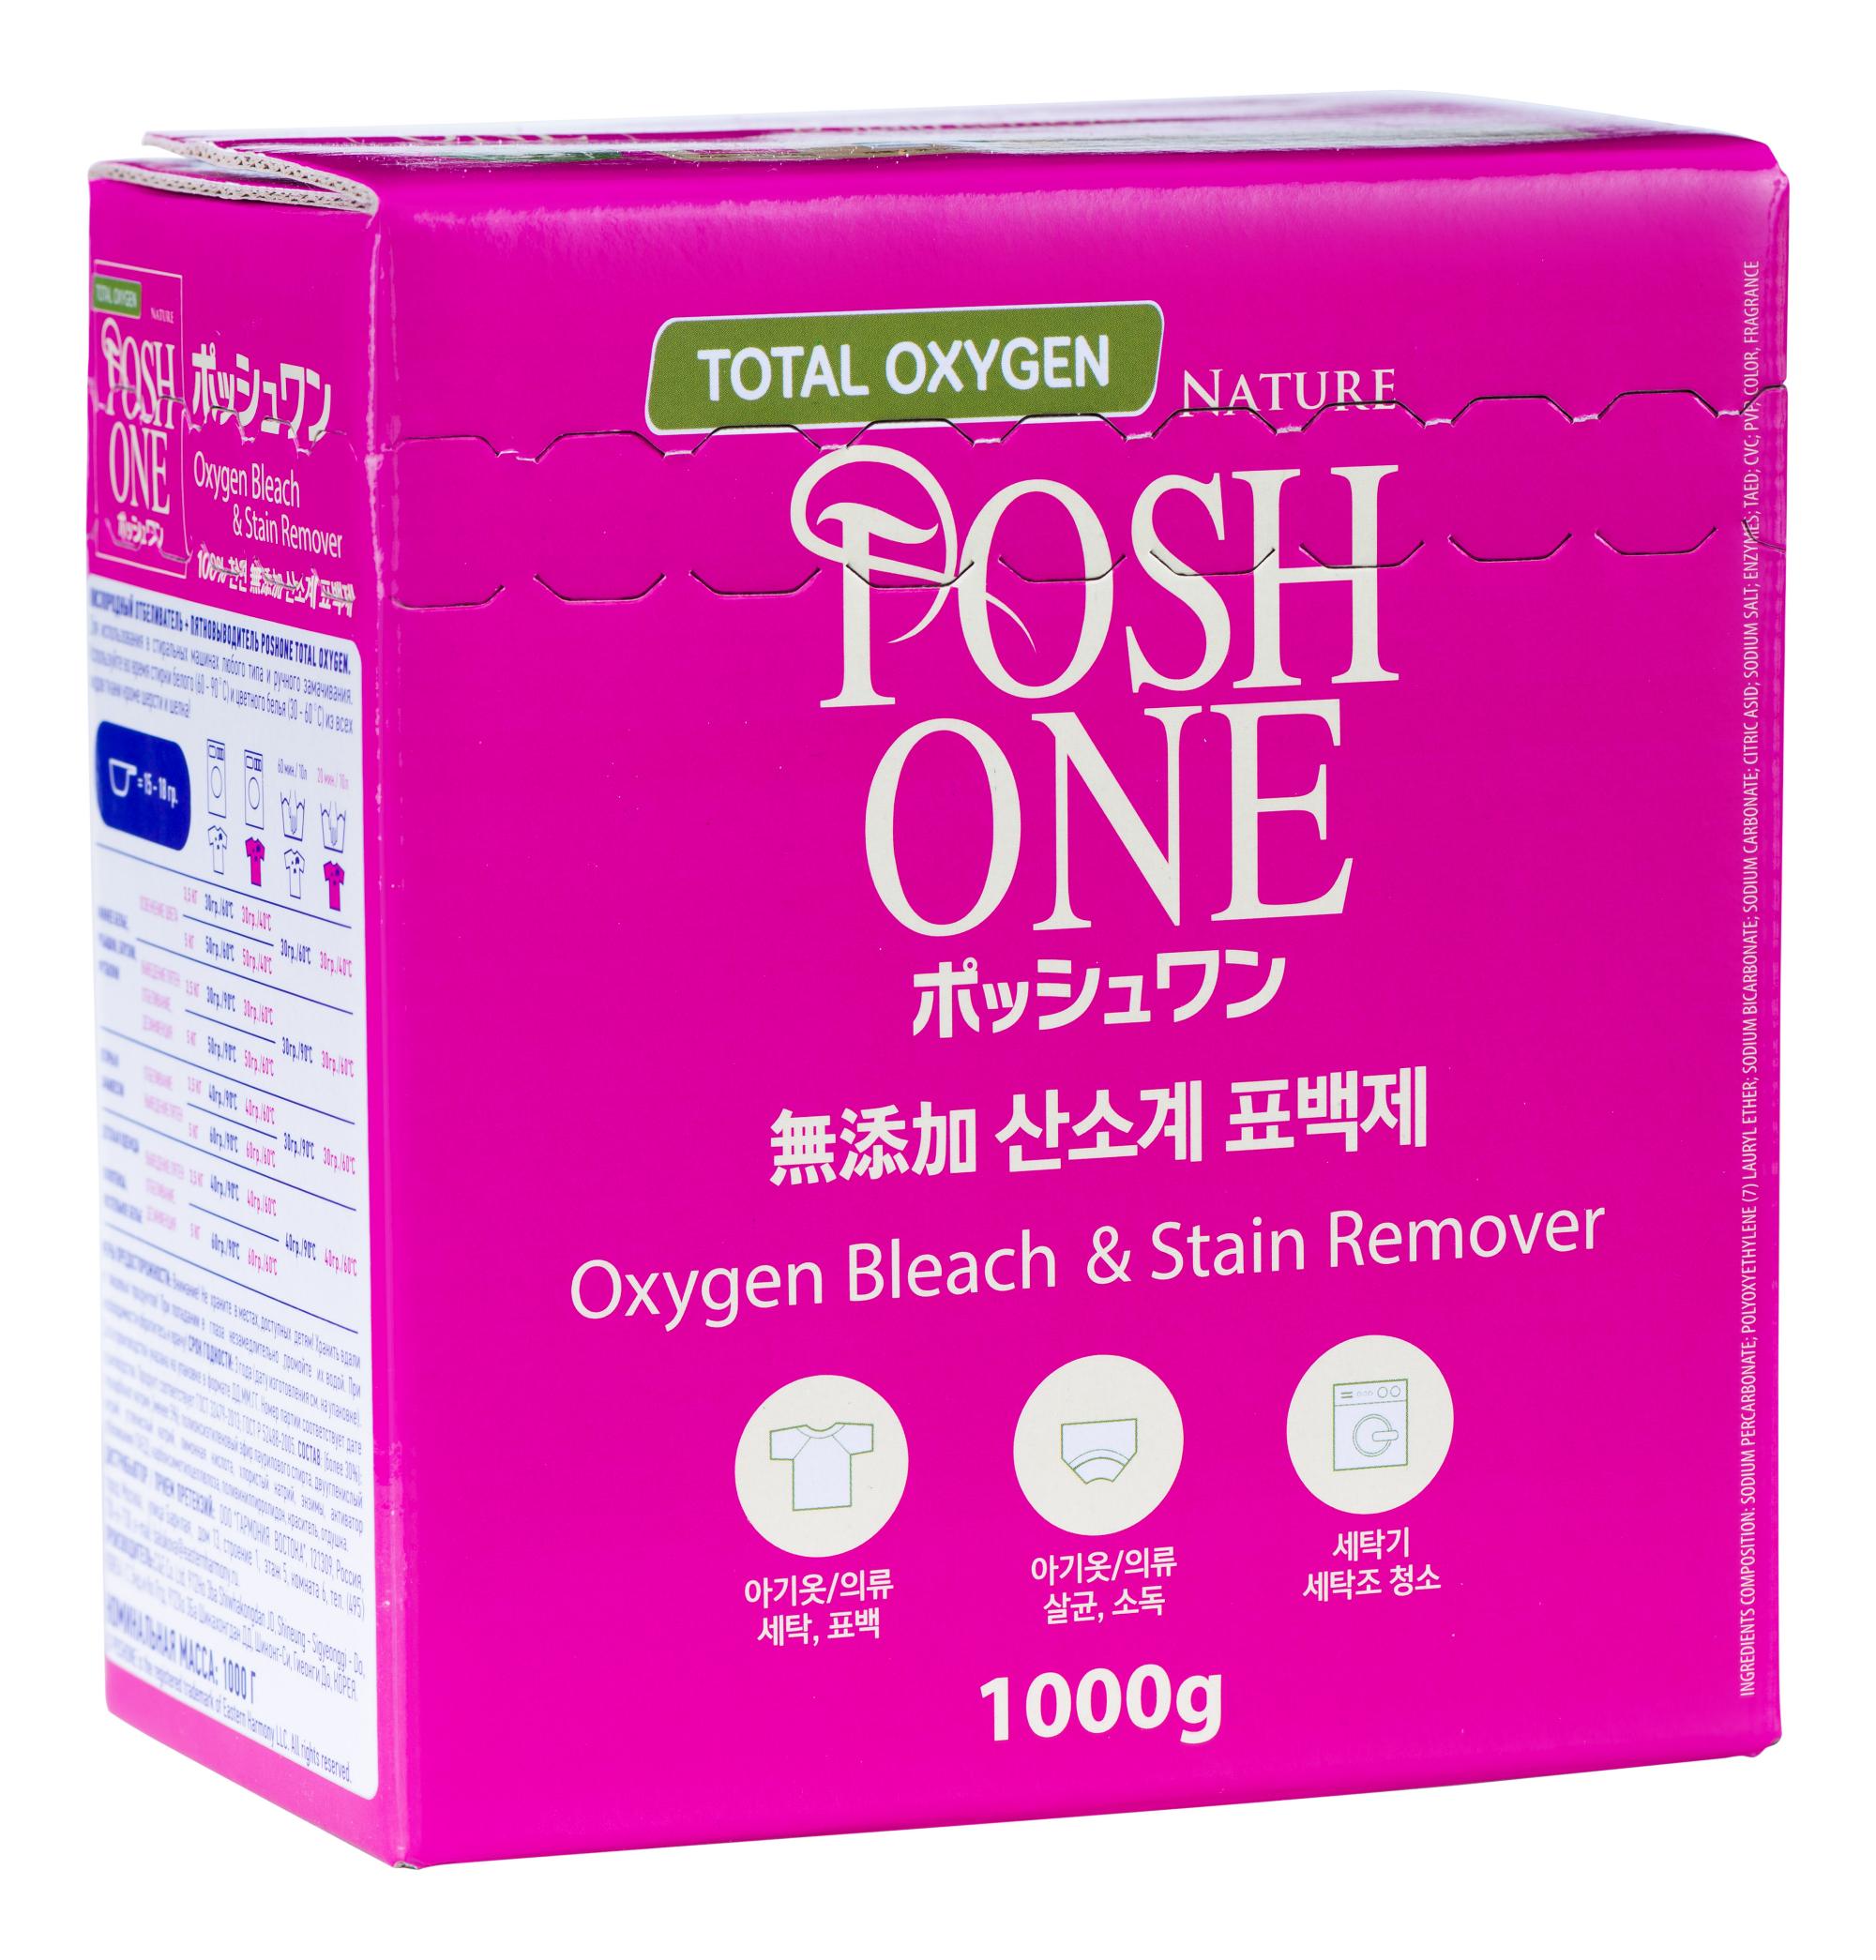 Кислородный отбеливатель+Пяновывовыдитель Total Oxy Gen, 1 кг, Posh one